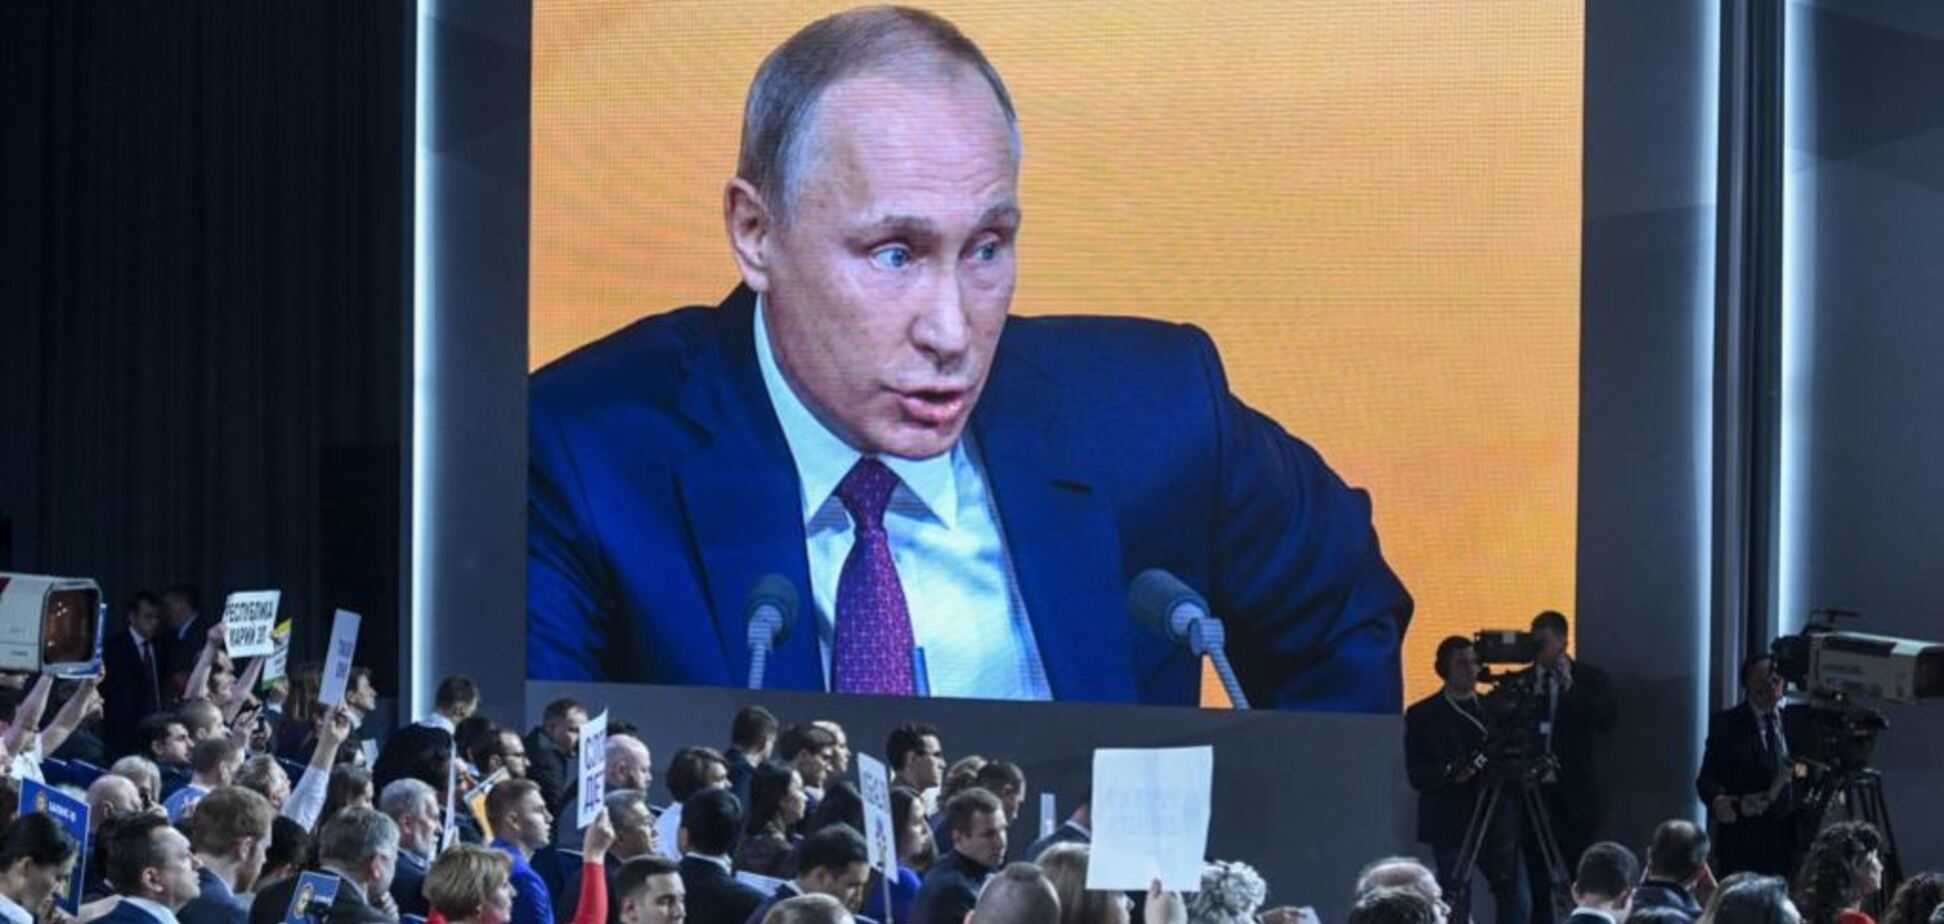 Хворих не пустять: з'ясувався скандальний факт про прес-конференцію Путіна